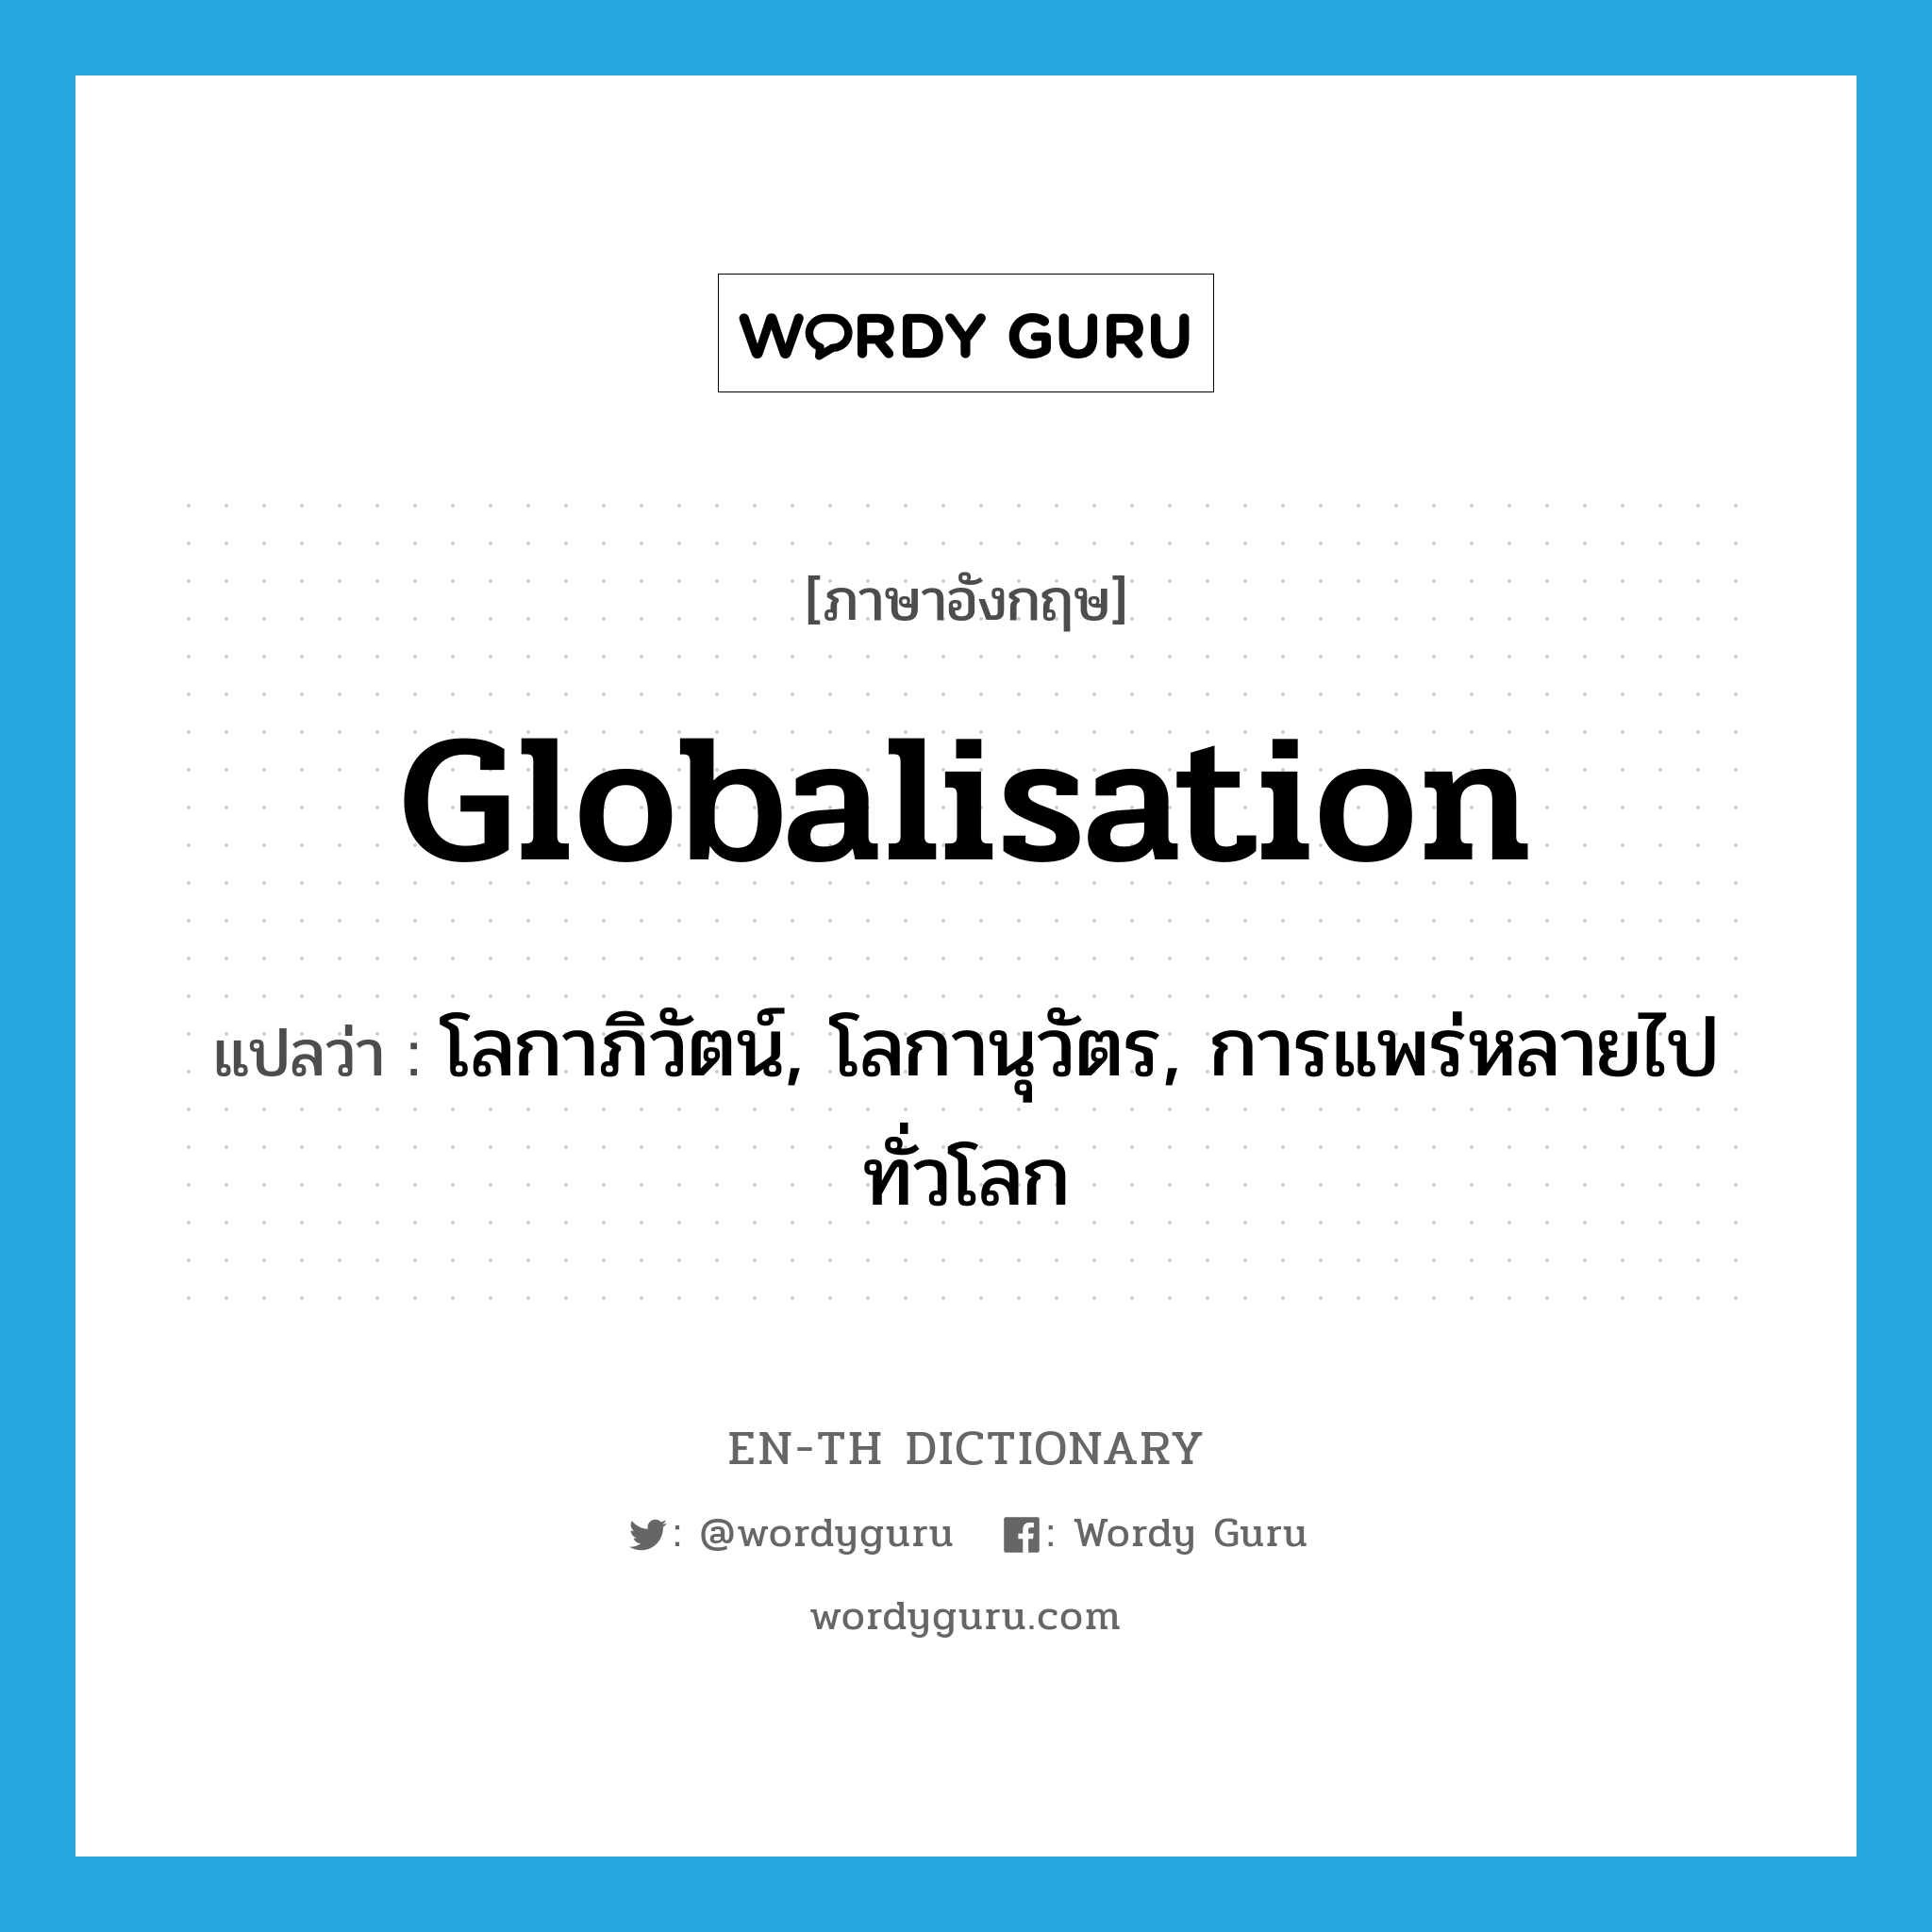 โลกาภิวัตน์, โลกานุวัตร, การแพร่หลายไปทั่วโลก ภาษาอังกฤษ?, คำศัพท์ภาษาอังกฤษ โลกาภิวัตน์, โลกานุวัตร, การแพร่หลายไปทั่วโลก แปลว่า globalisation ประเภท N หมวด N